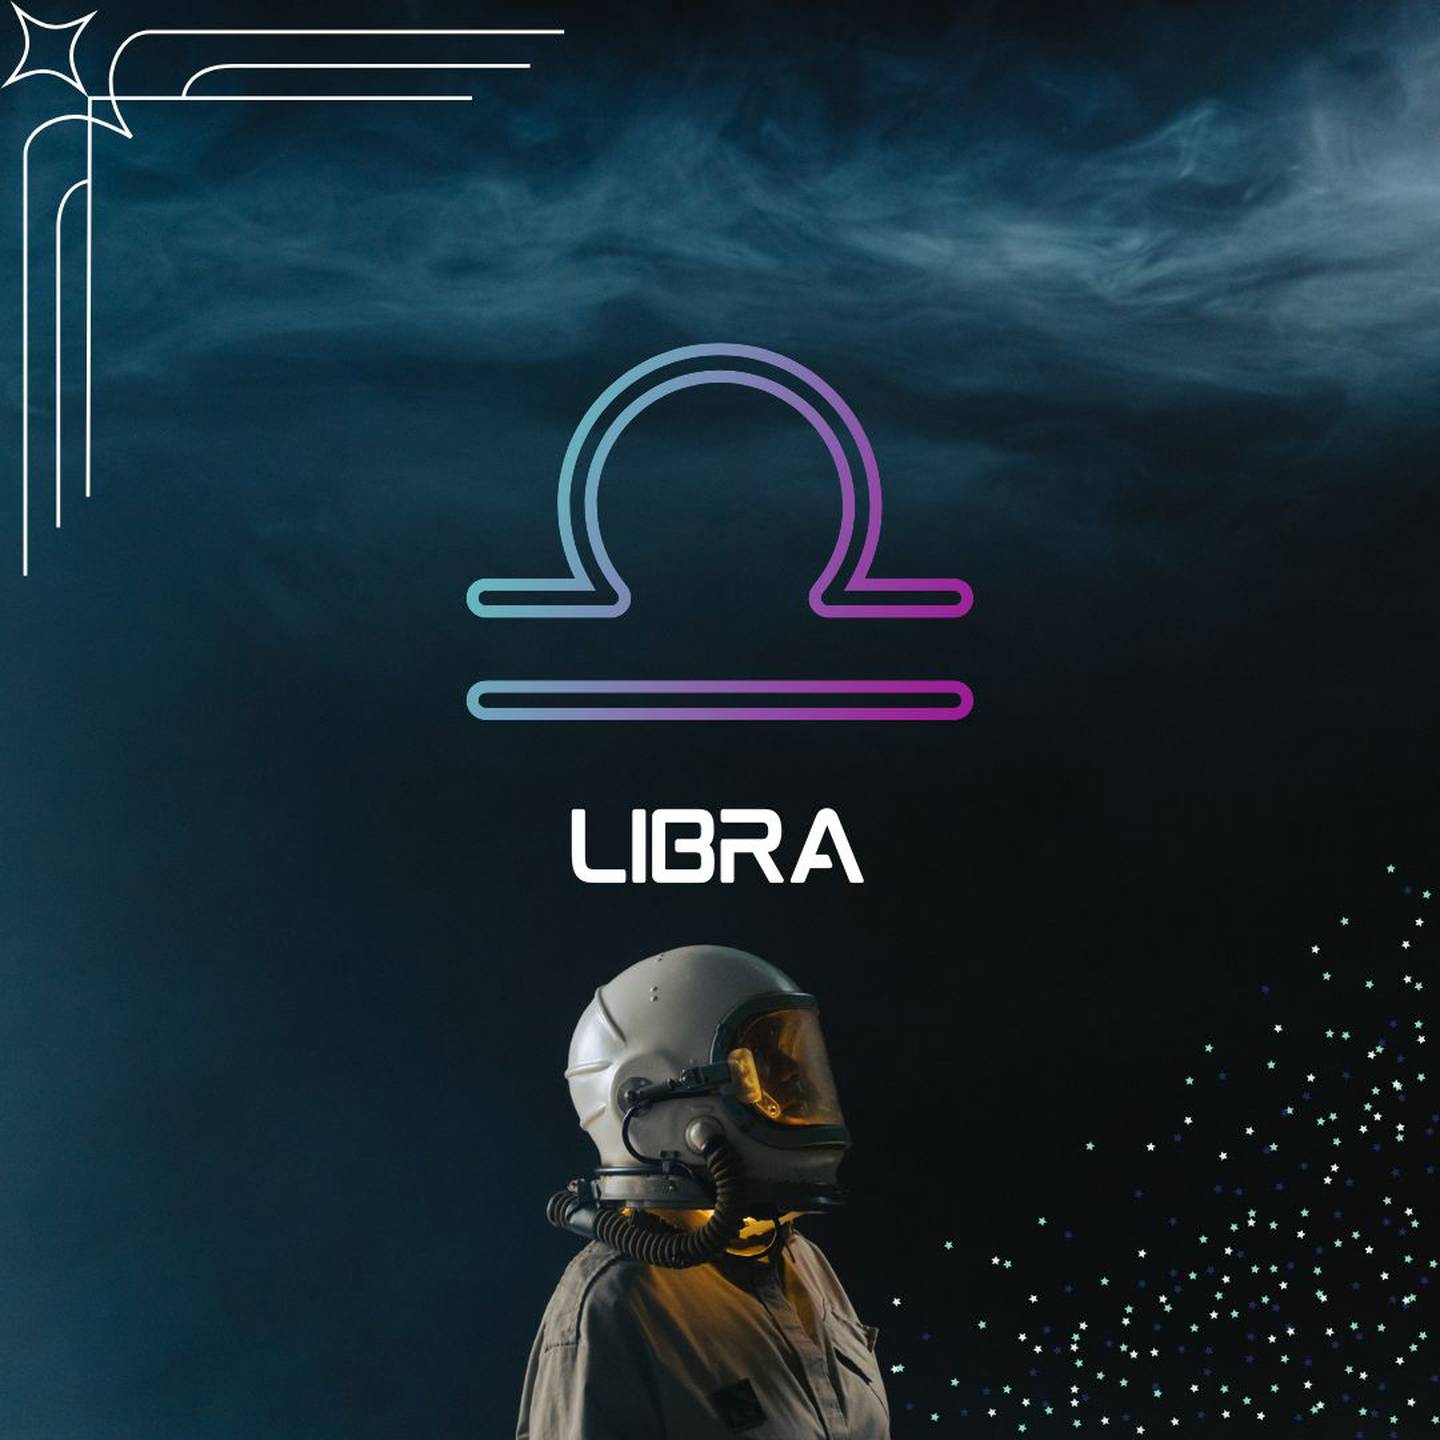 Sobre un fondo oscuro, con humo en la parte superior, aparece el símbolo de Libra. Al centro aparece el nombre del signo en color blanco y todavía más abajo, un astronauta está mirando hacia la derecha.